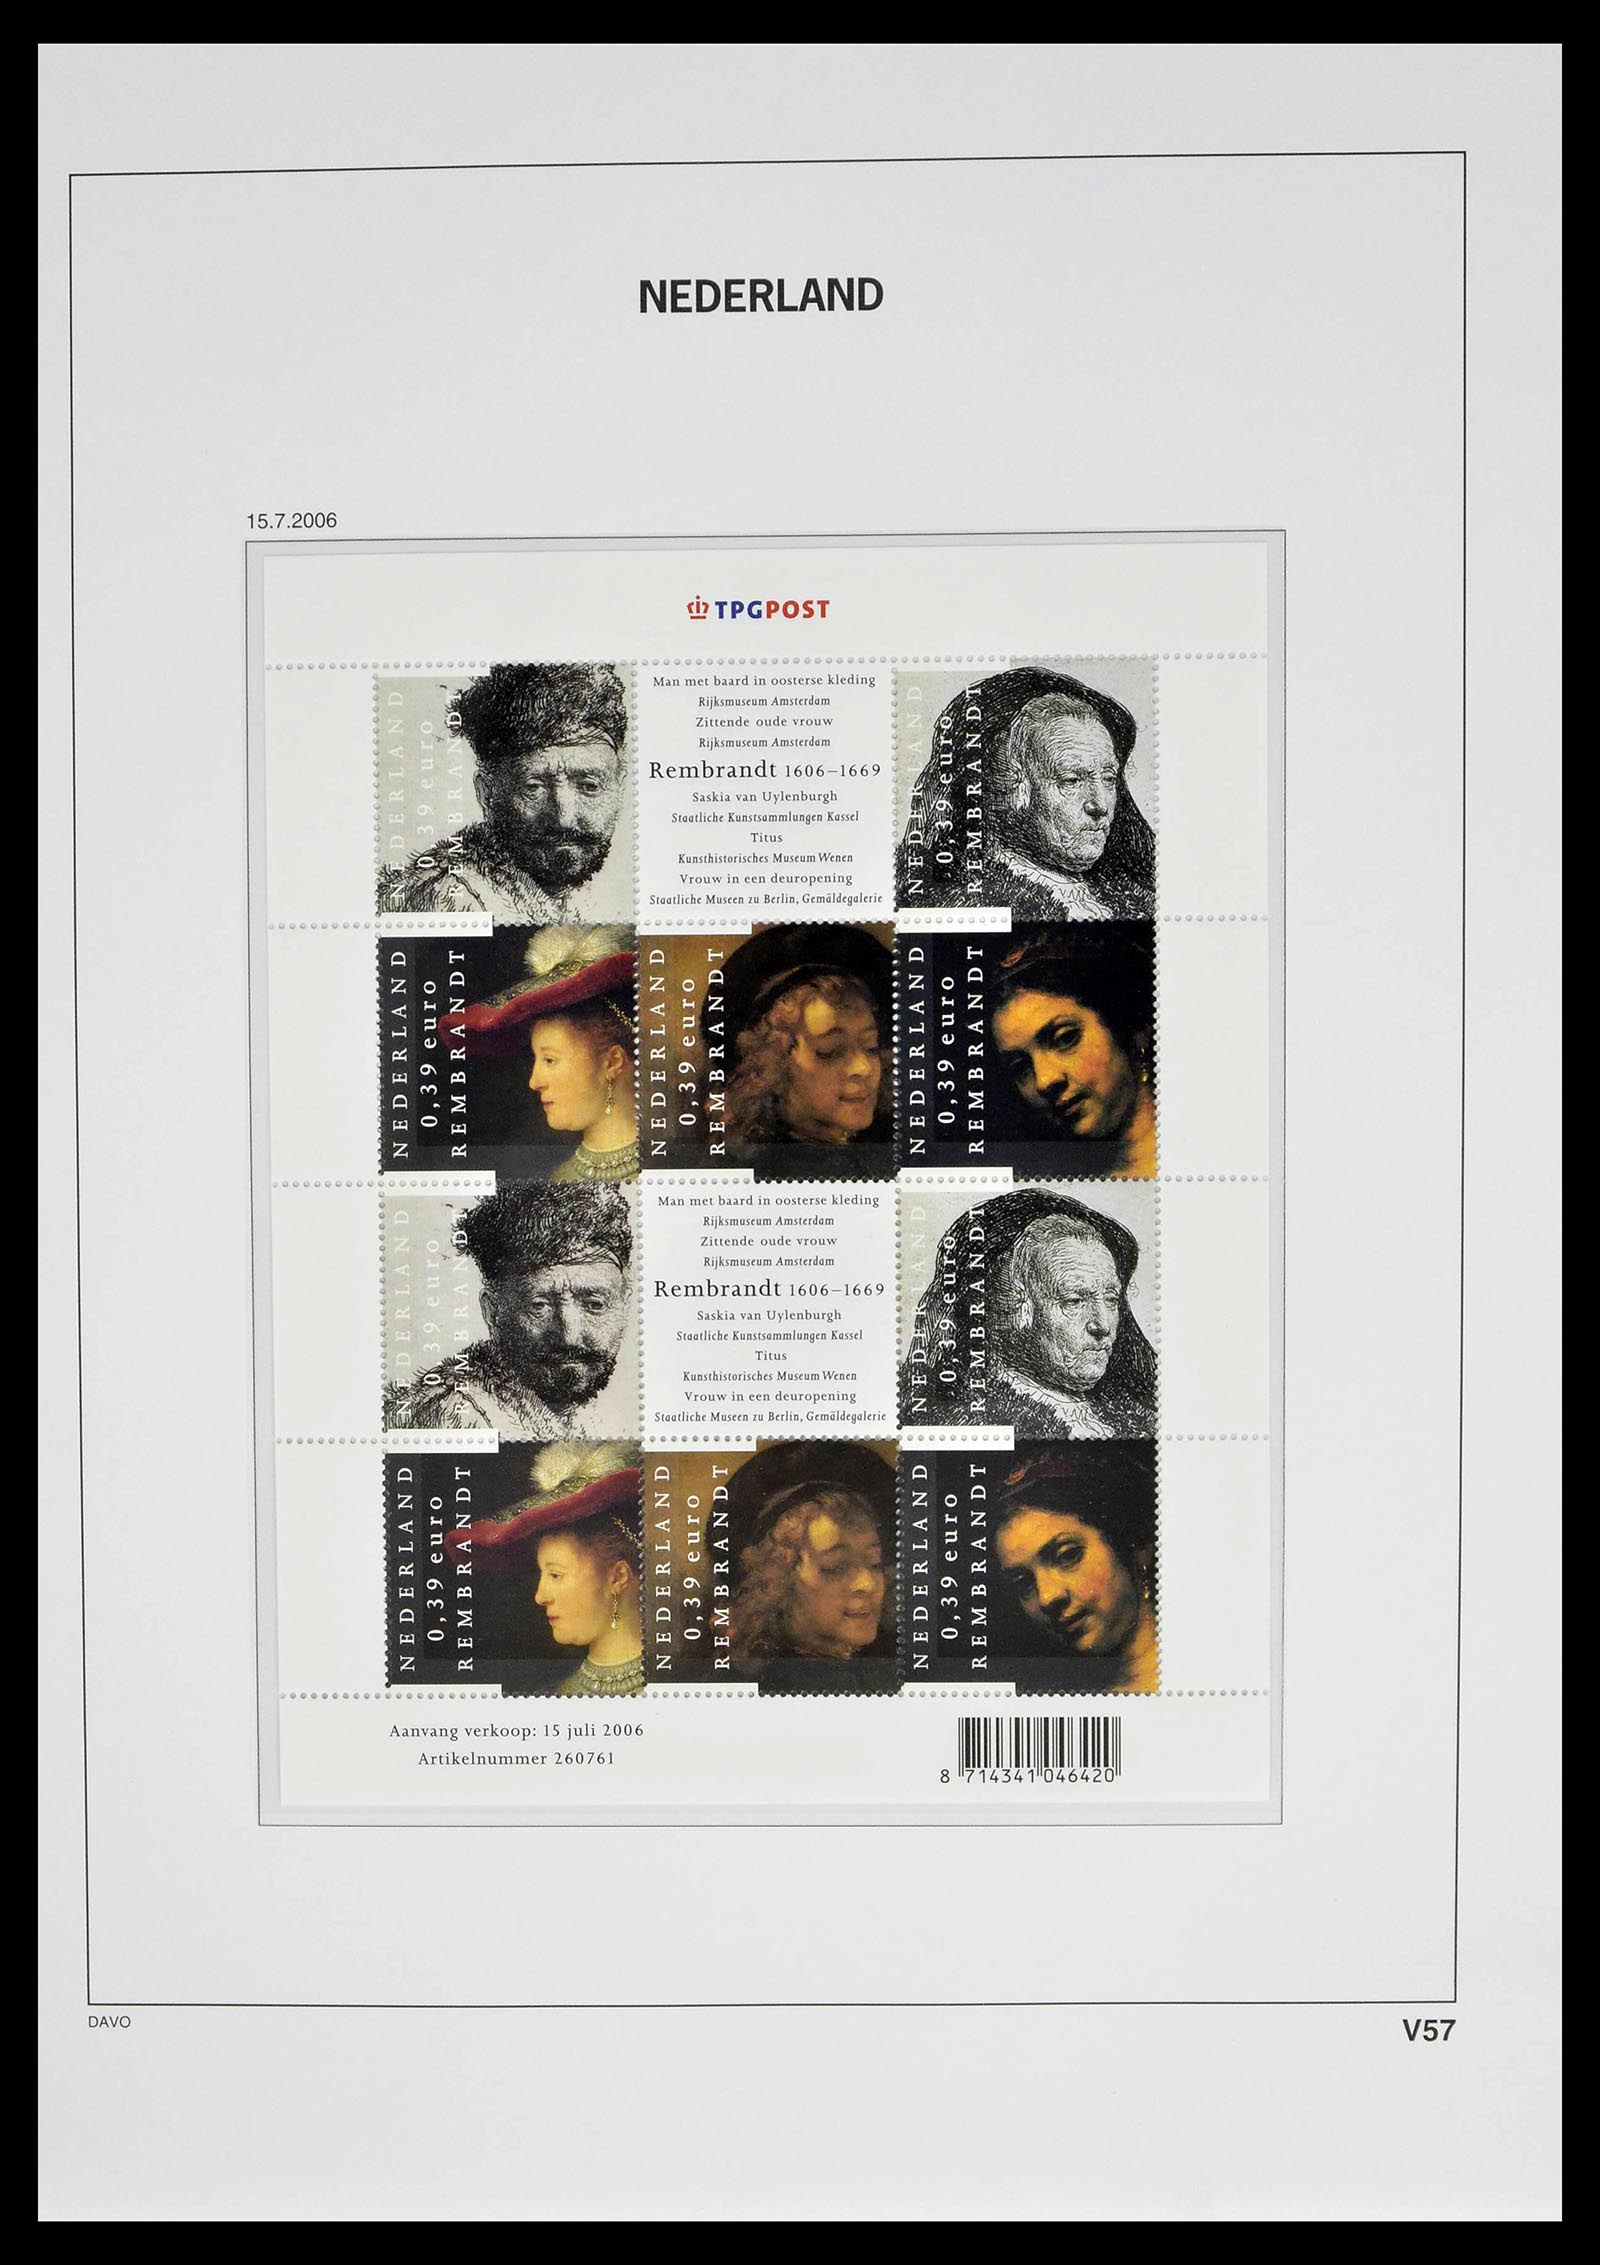 39134 0071 - Stamp collection 39134 Netherlands sheetlets 1992-2019!